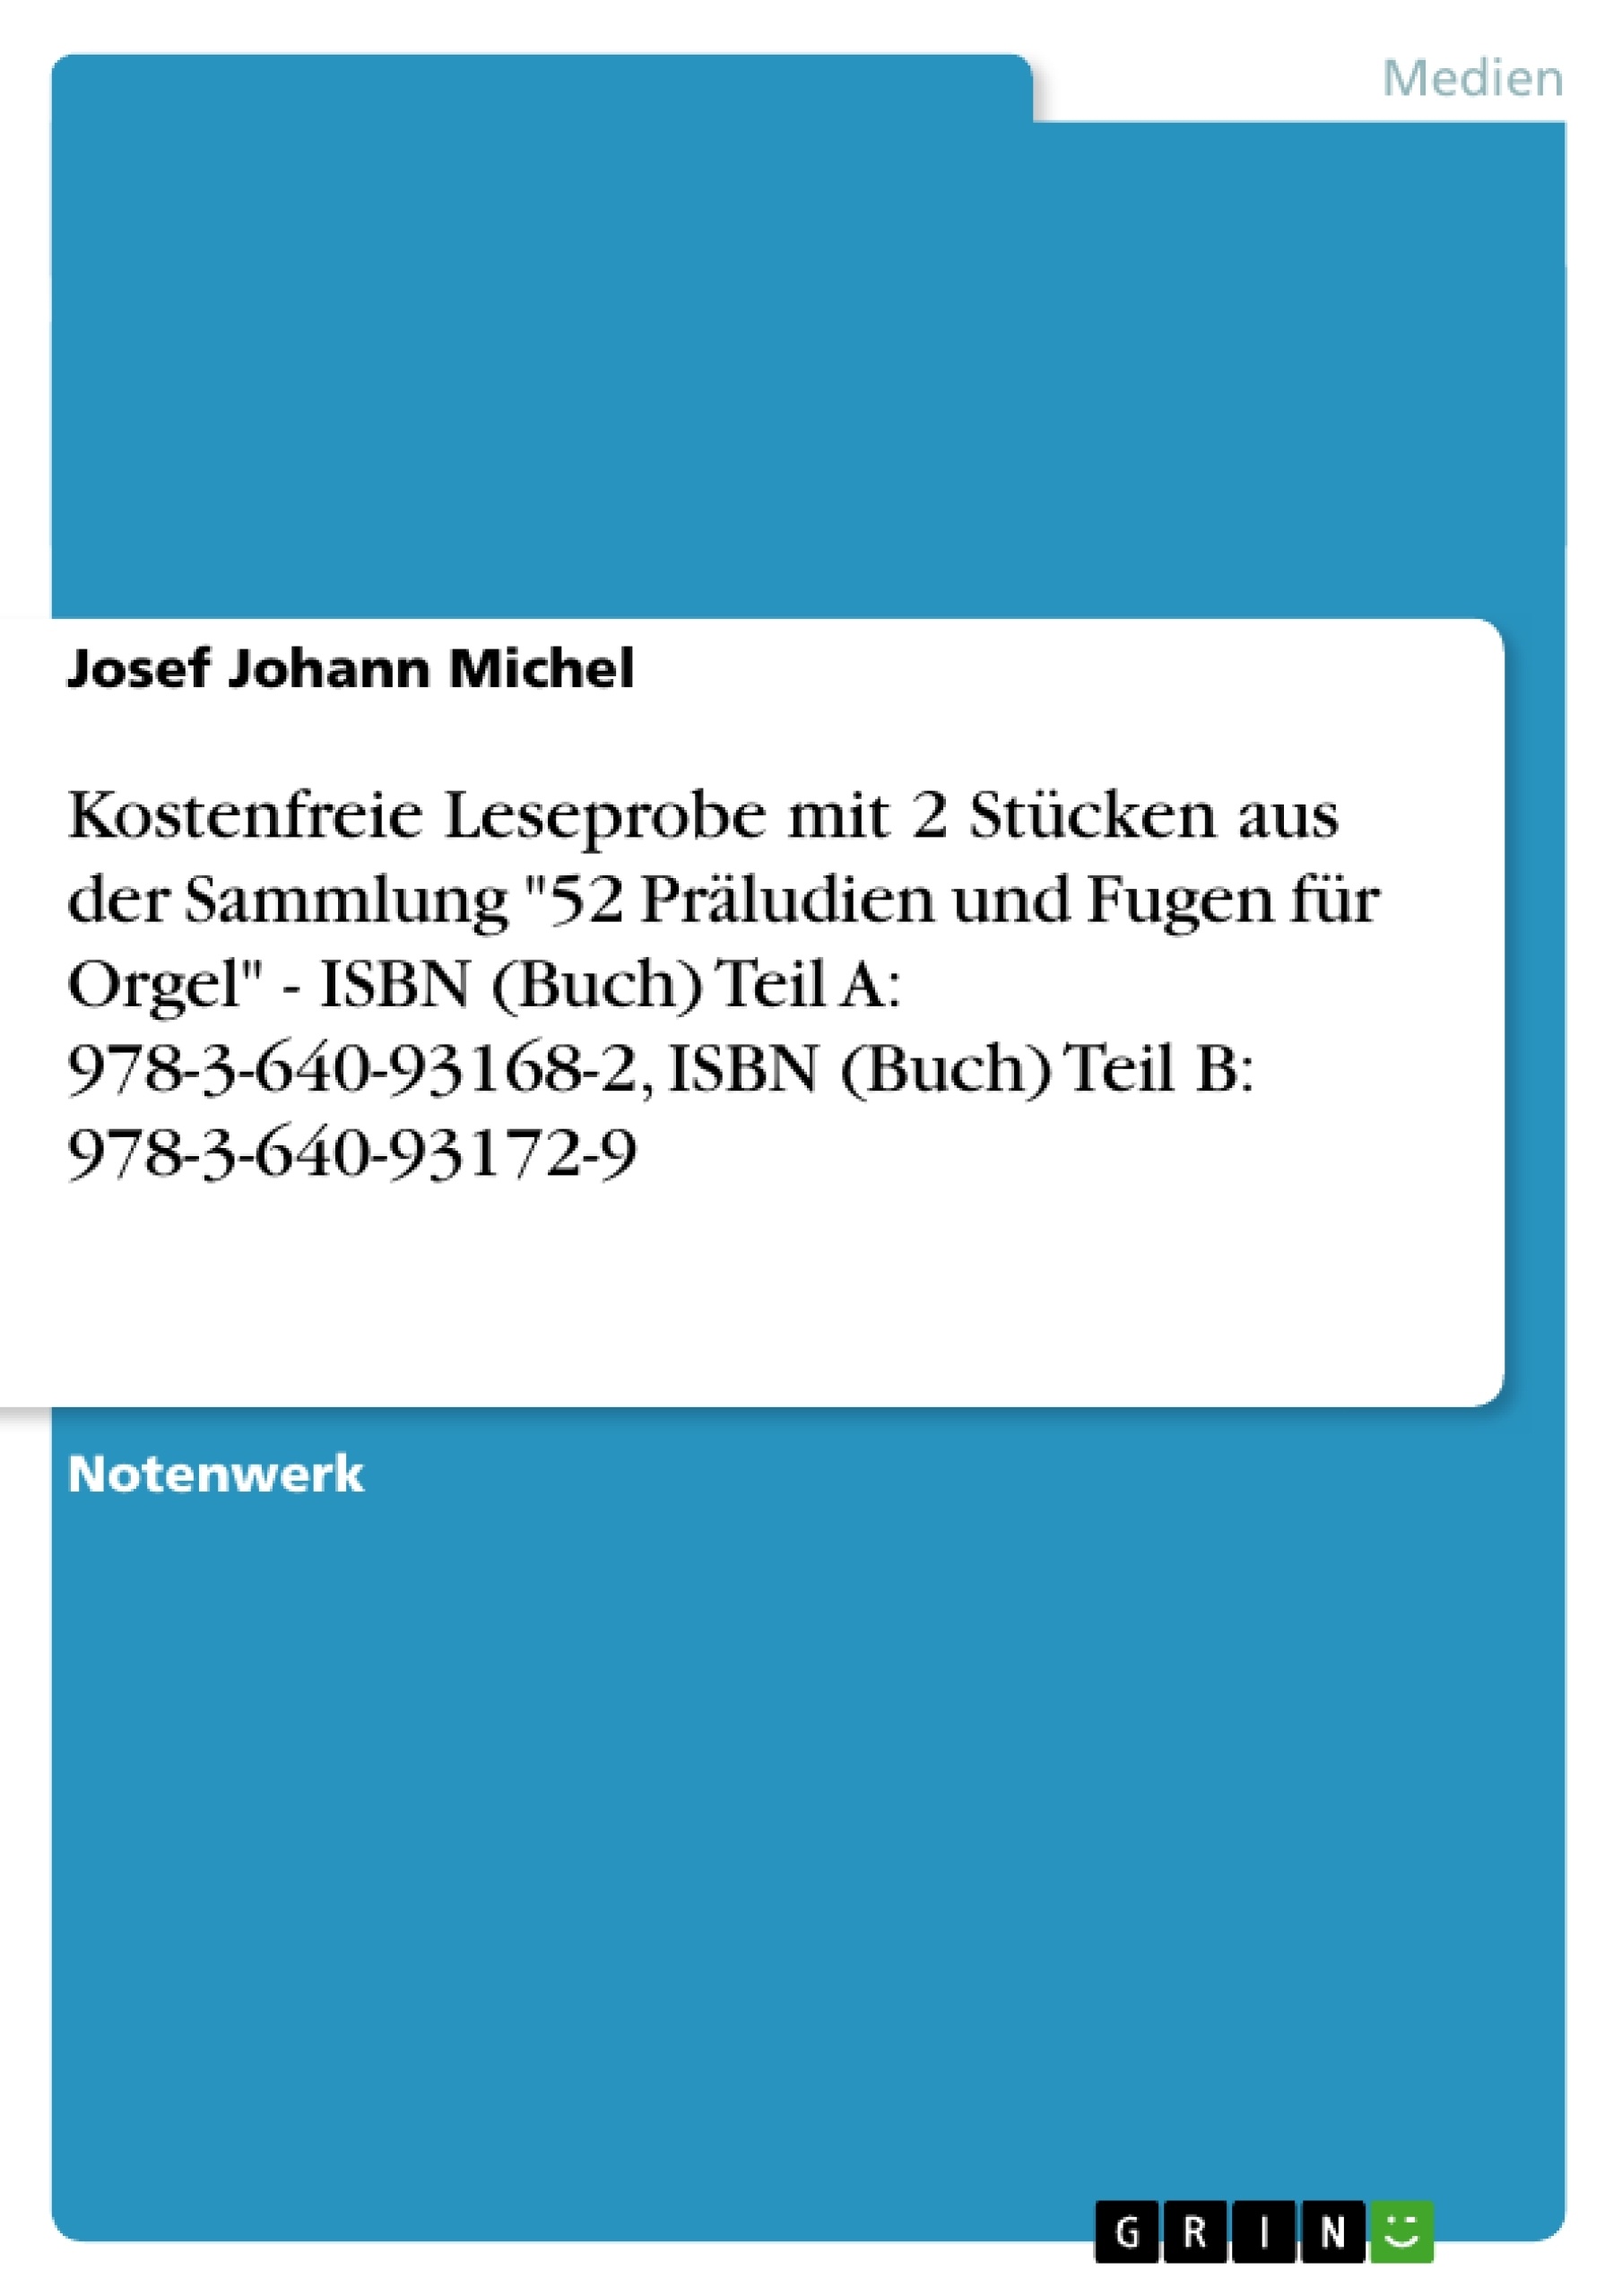 Título: Kostenfreie Leseprobe mit 2 Stücken aus der Sammlung "52 Präludien und Fugen für Orgel" - ISBN (Buch) Teil A: 978-3-640-93168-2, ISBN (Buch) Teil B: 978-3-640-93172-9